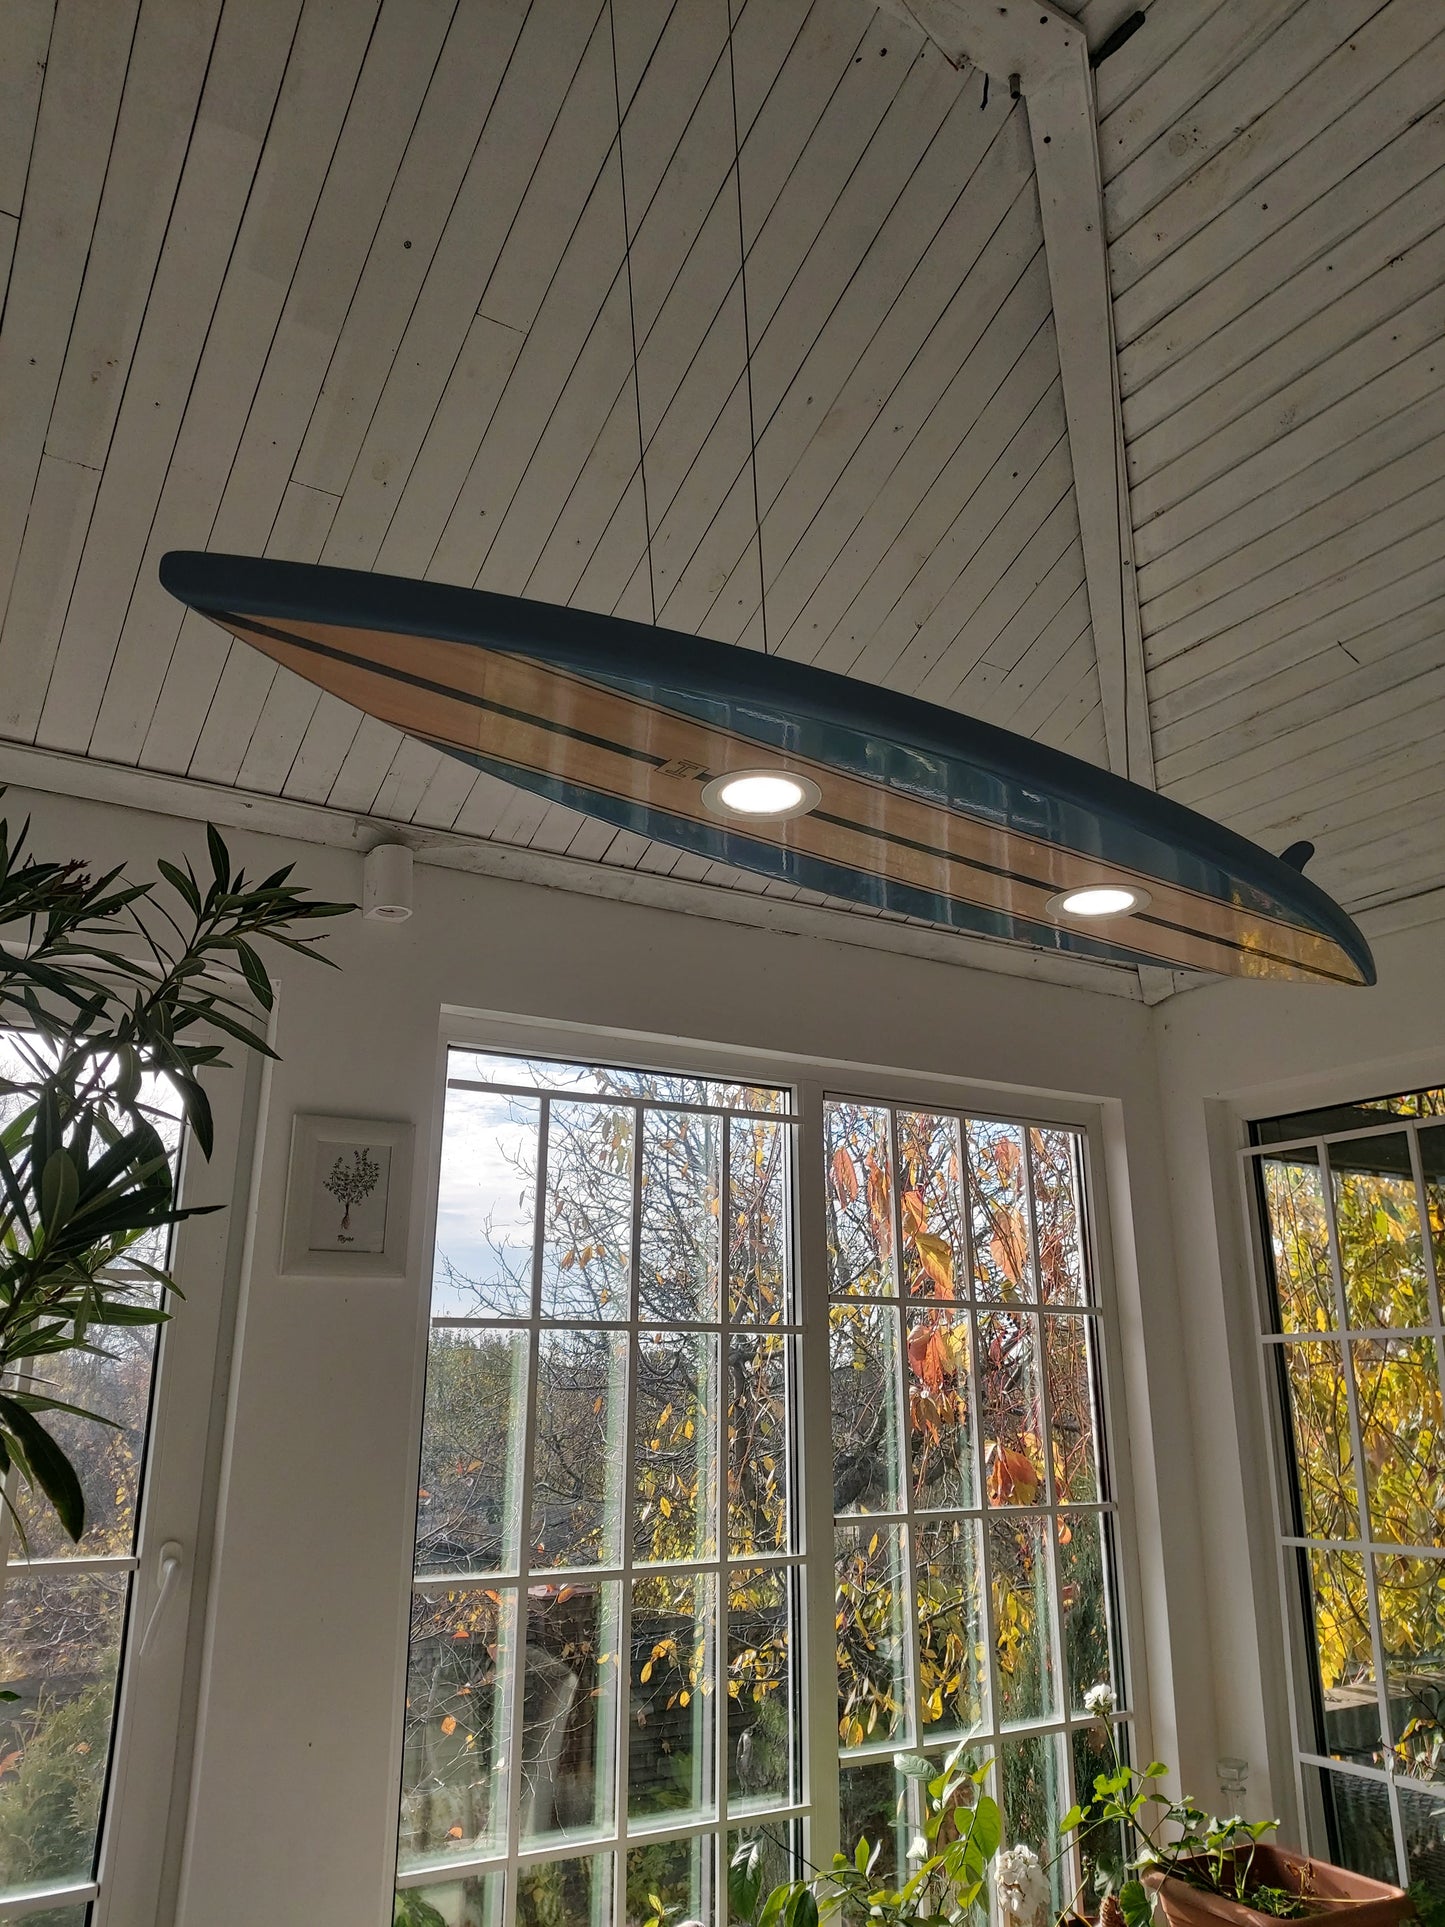 40 inch Surfboard Shaped Ceiling Chandelier - Pool Billiard Table Light